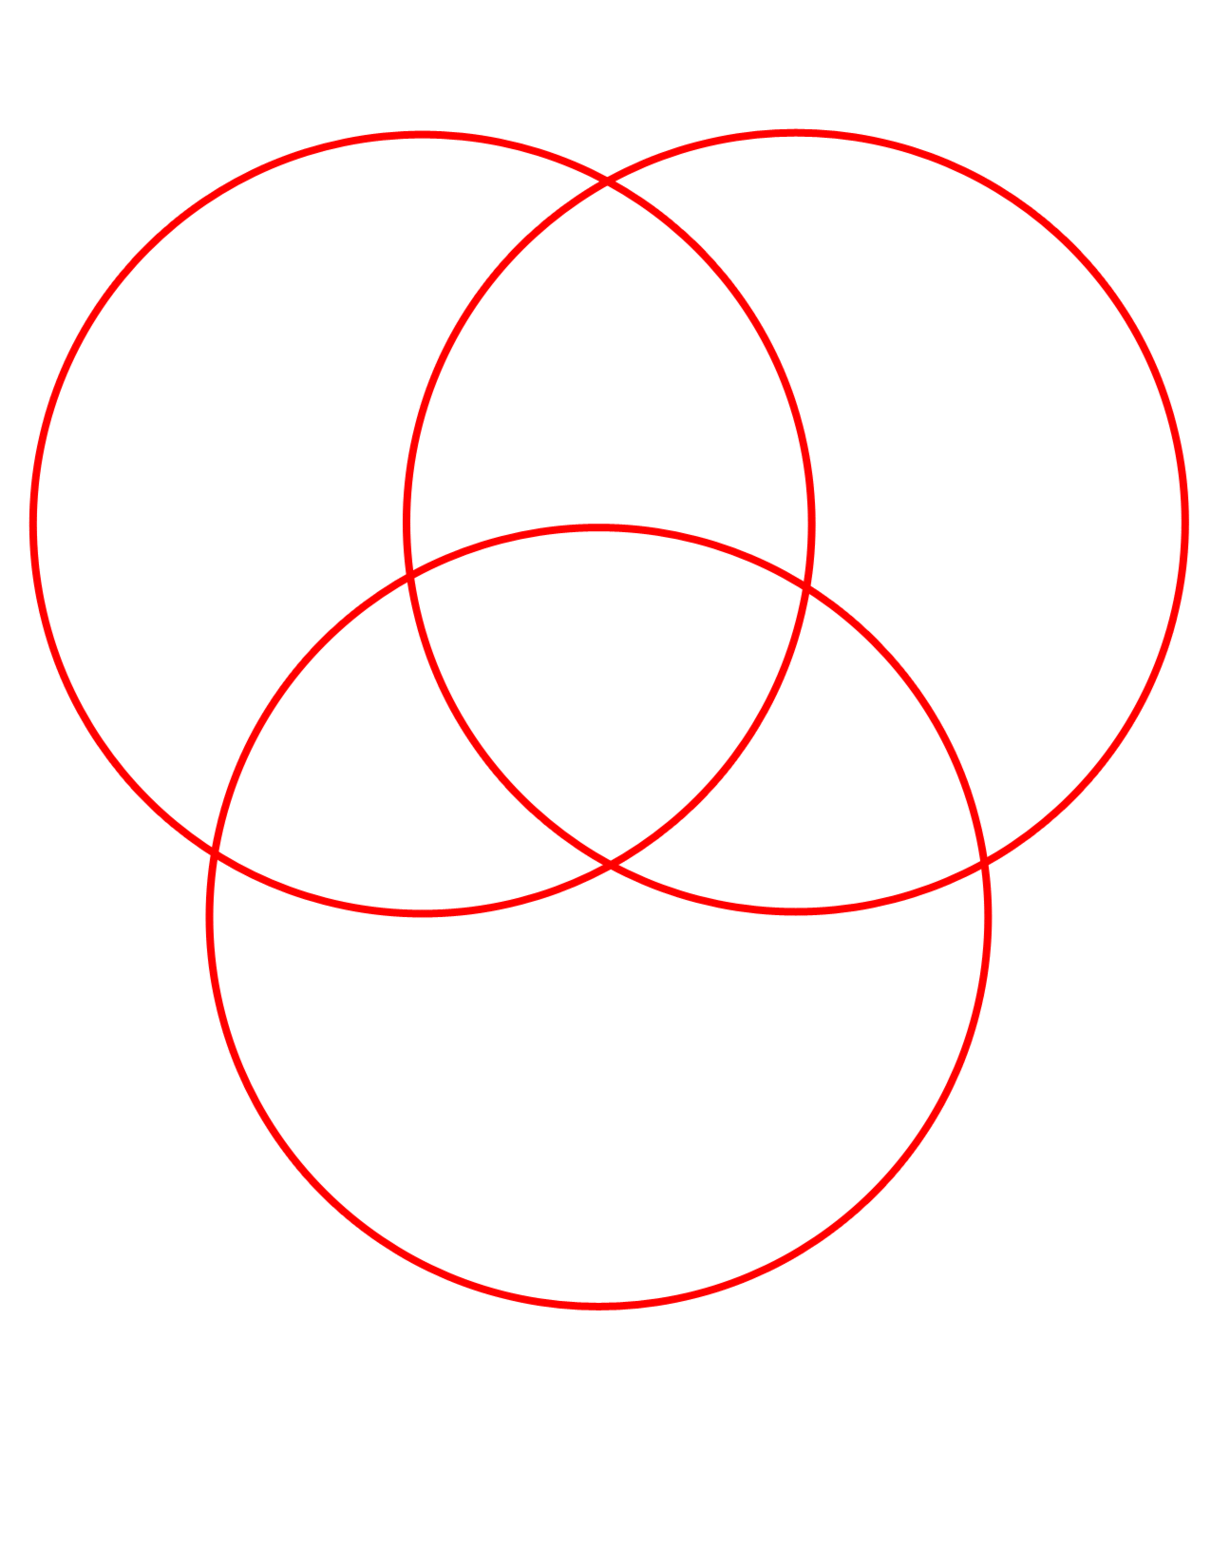 venn diagram template 3 circles ~ Www.jebas.us